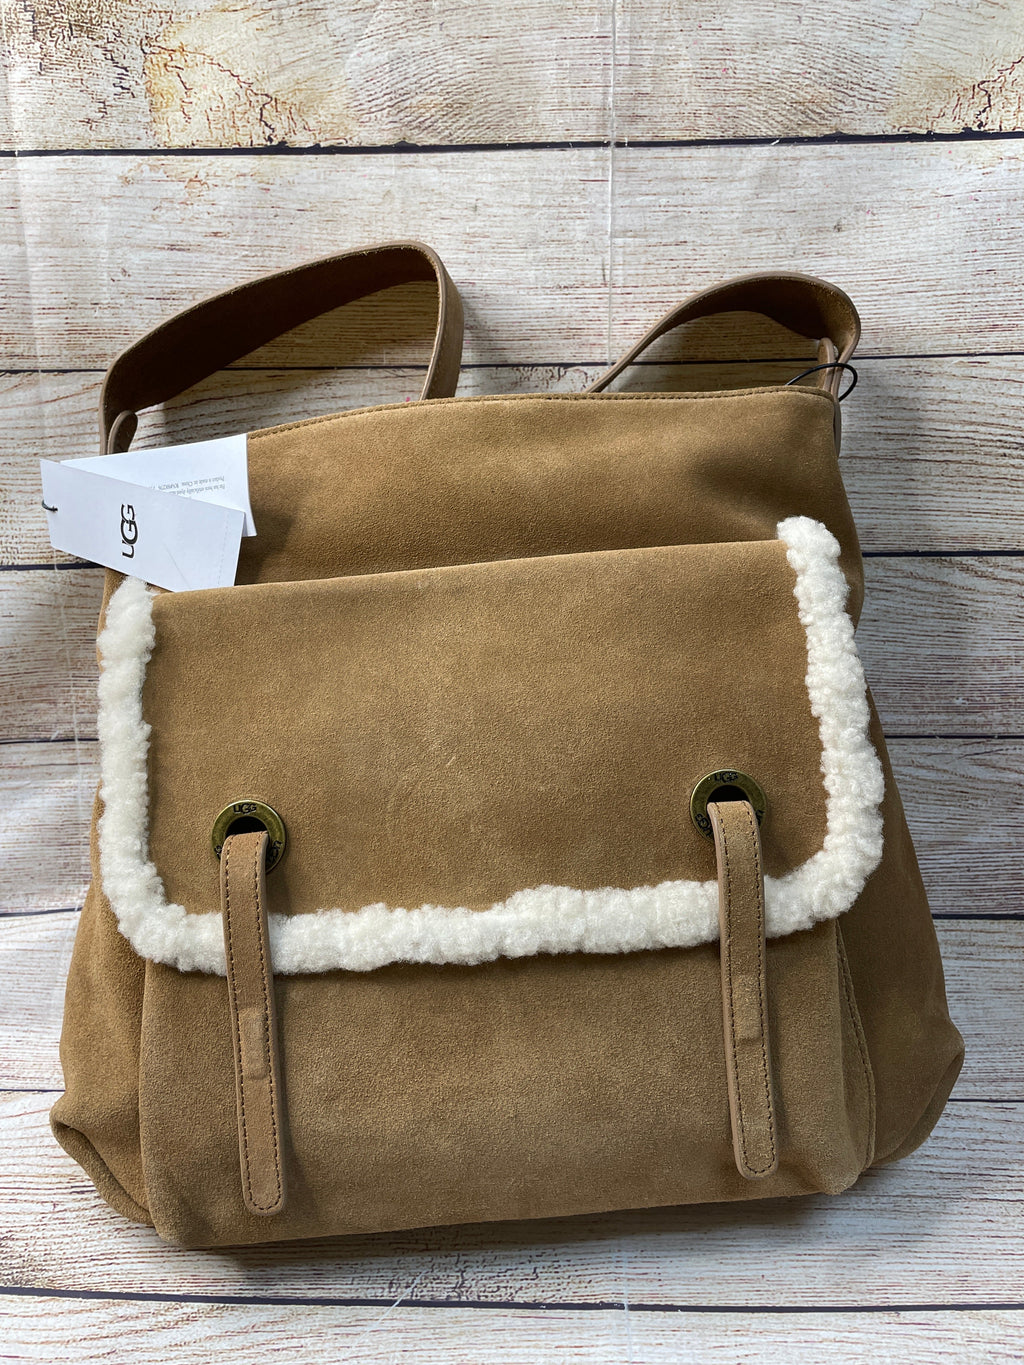 Handbag Designer By Ugg Size: Medium